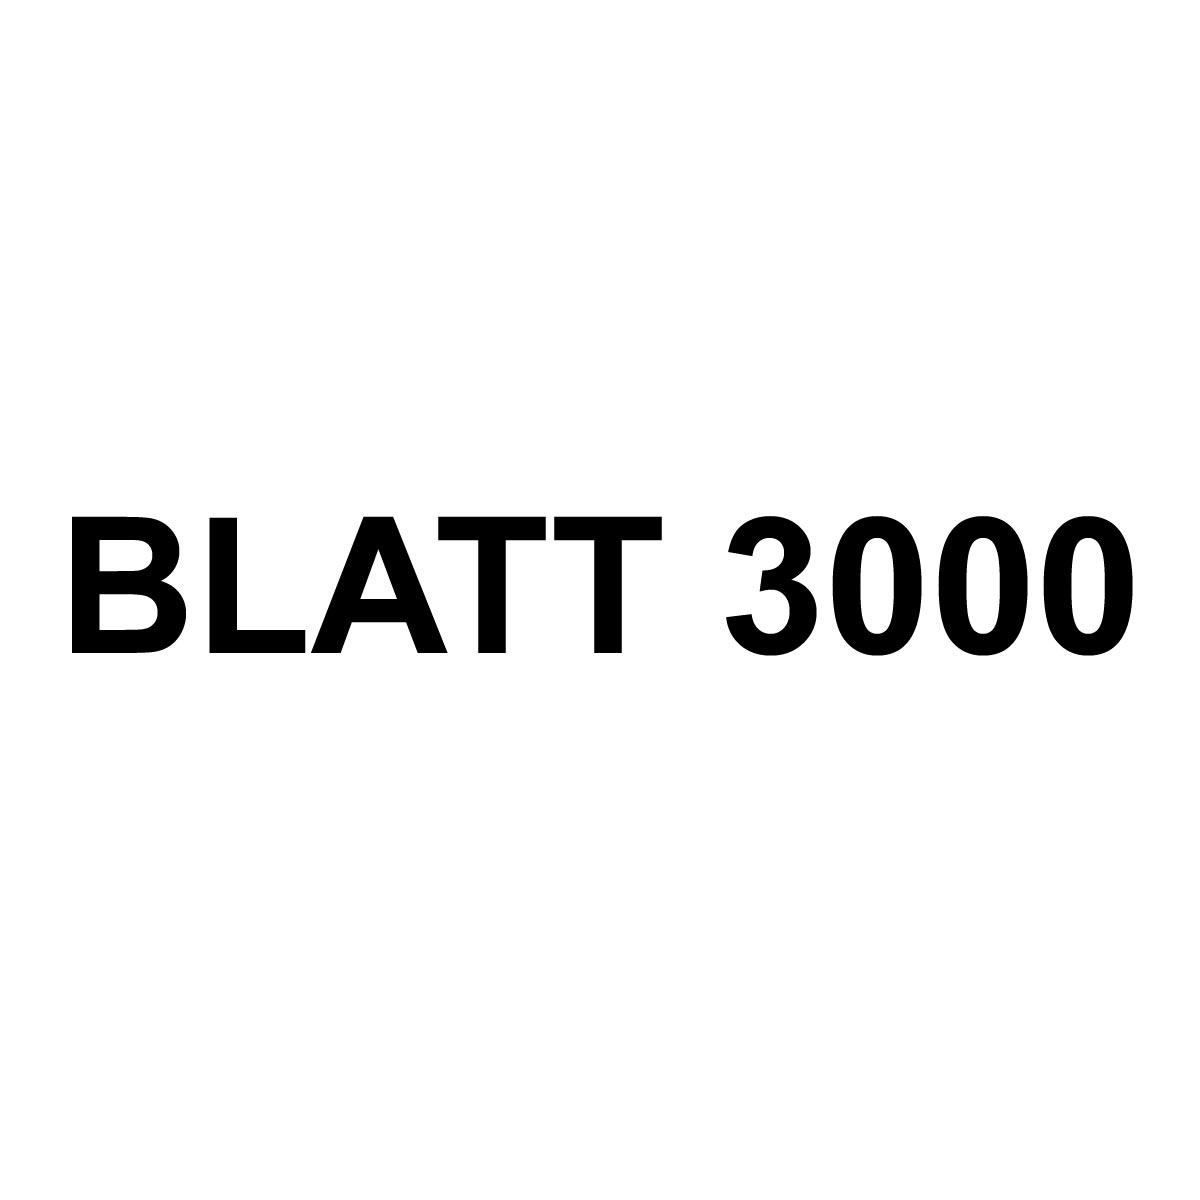 (c) Blatt3000.de